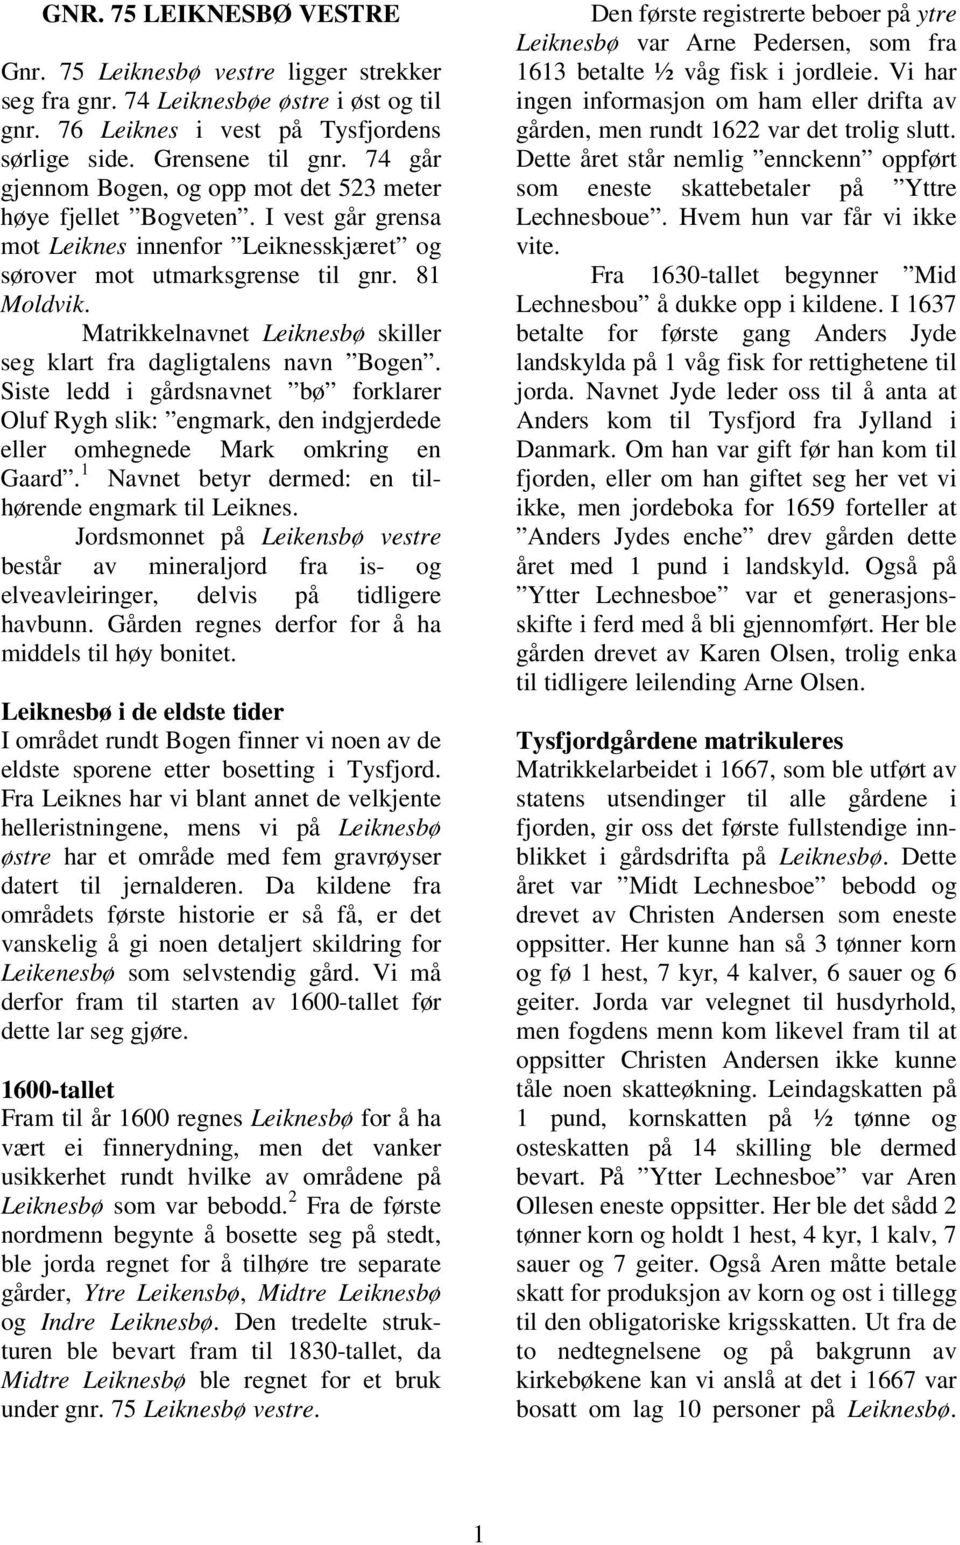 Matrikkelnavnet Leiknesbø skiller seg klart fra dagligtalens navn Bogen. Siste ledd i gårdsnavnet bø forklarer Oluf Rygh slik: engmark, den indgjerdede eller omhegnede Mark omkring en Gaard.